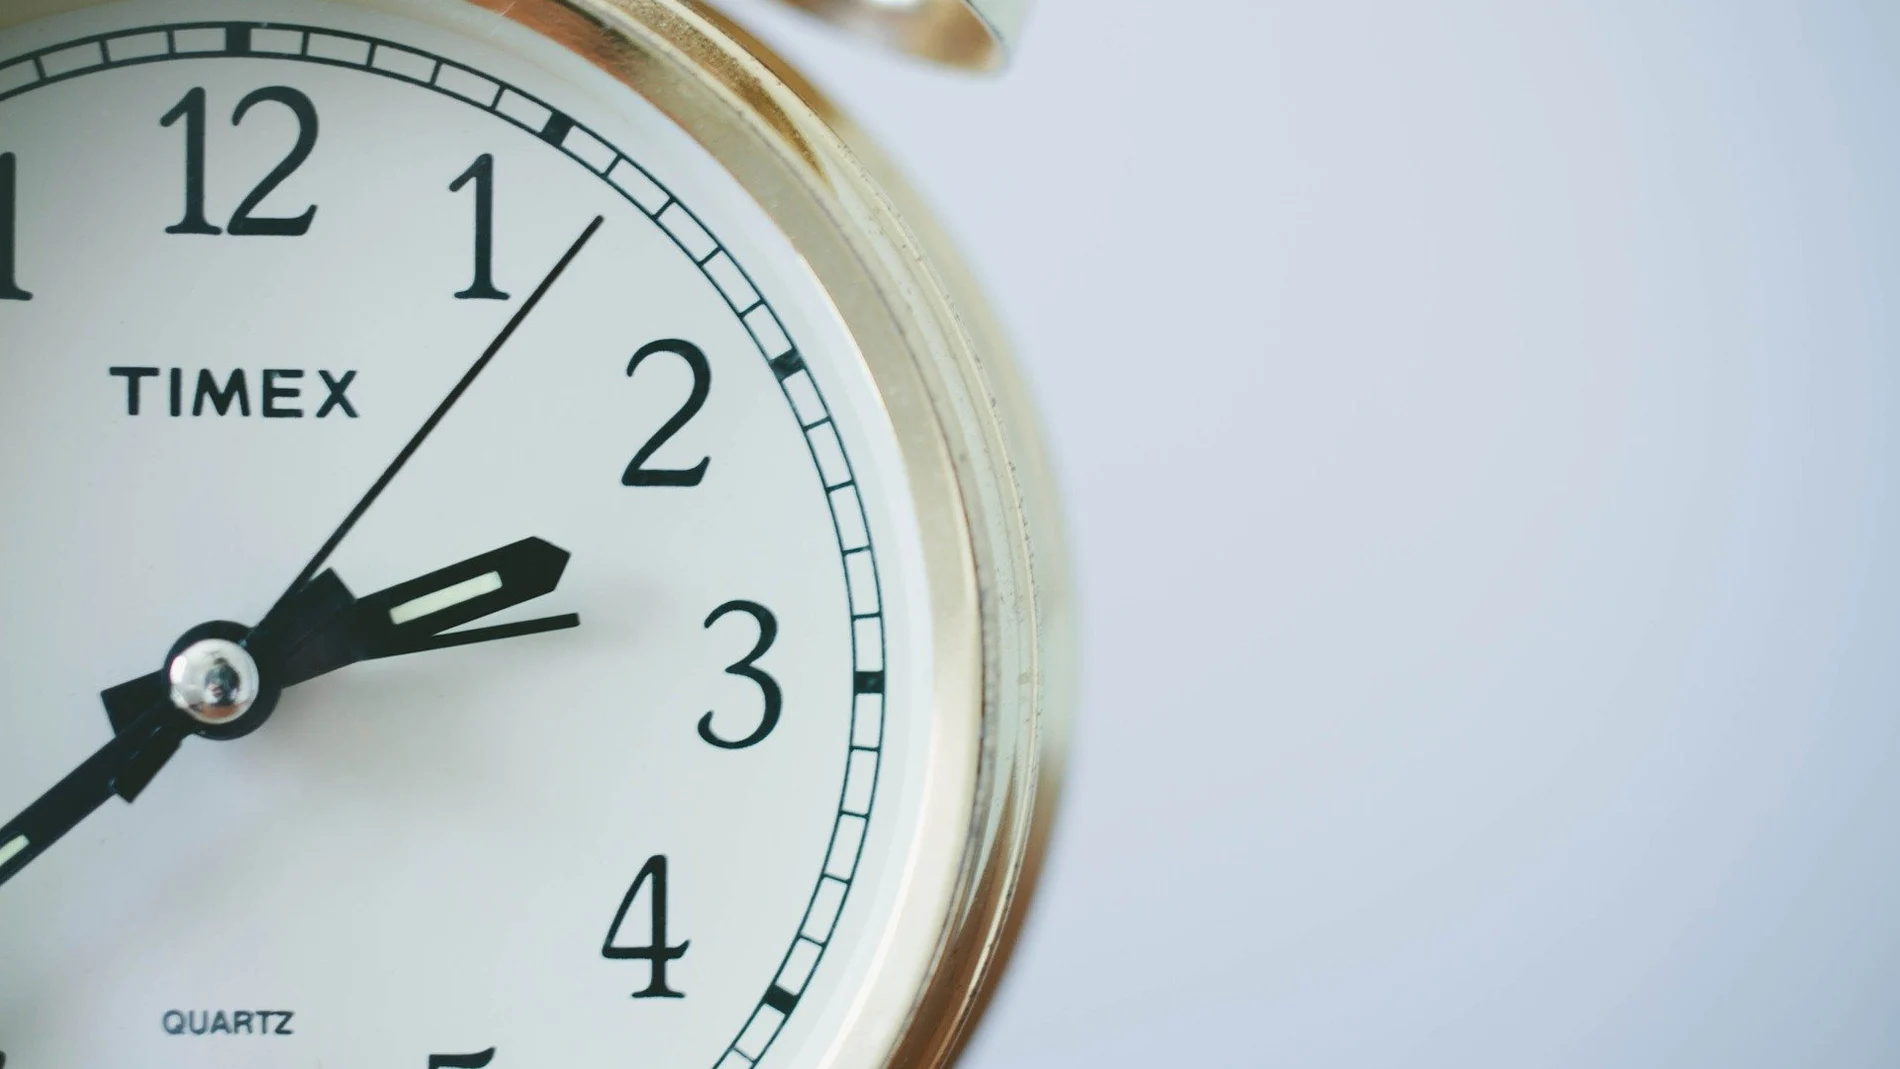  Cambio de hora 2021: ¿A qué hora se cambia la hora hoy?